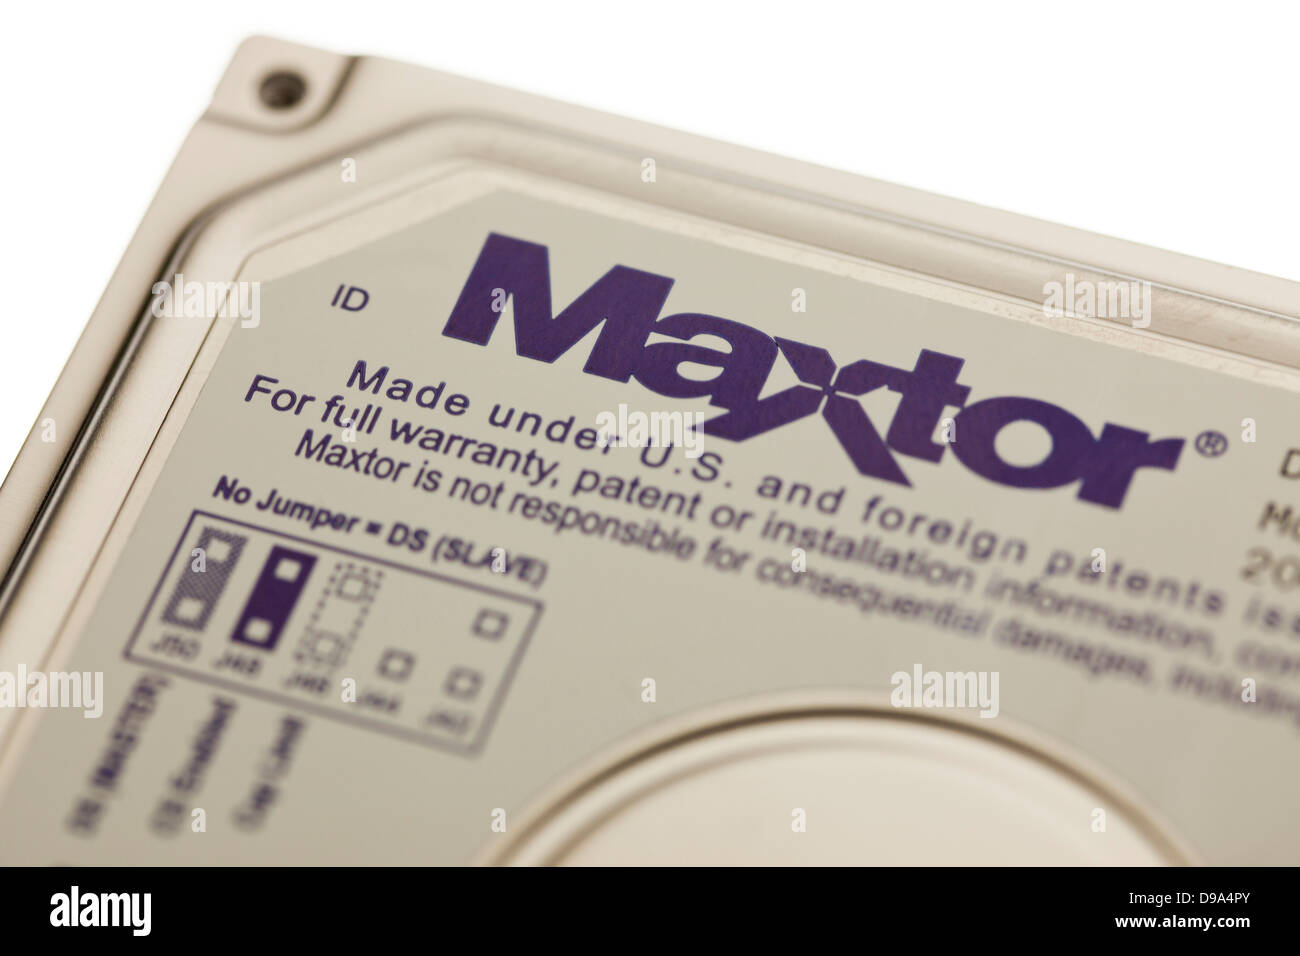 Maxtor Hard Disk Drive Stock Photo